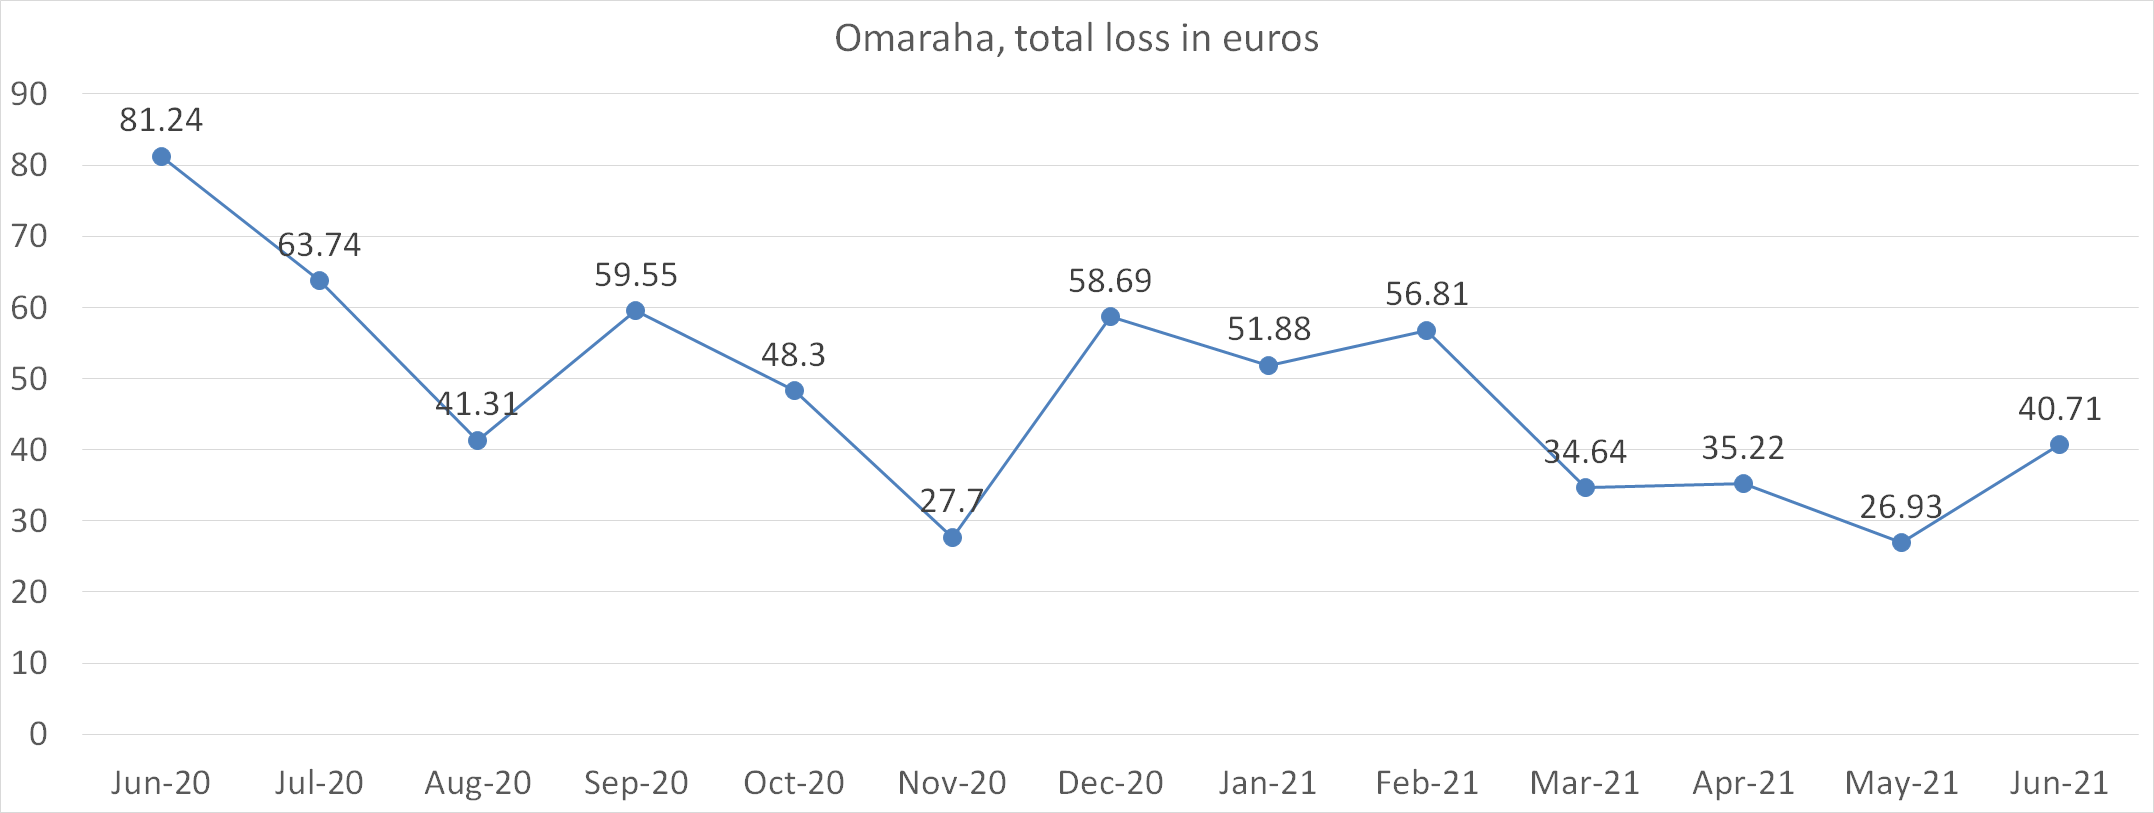 Omaraha, total loss in euros june 2021